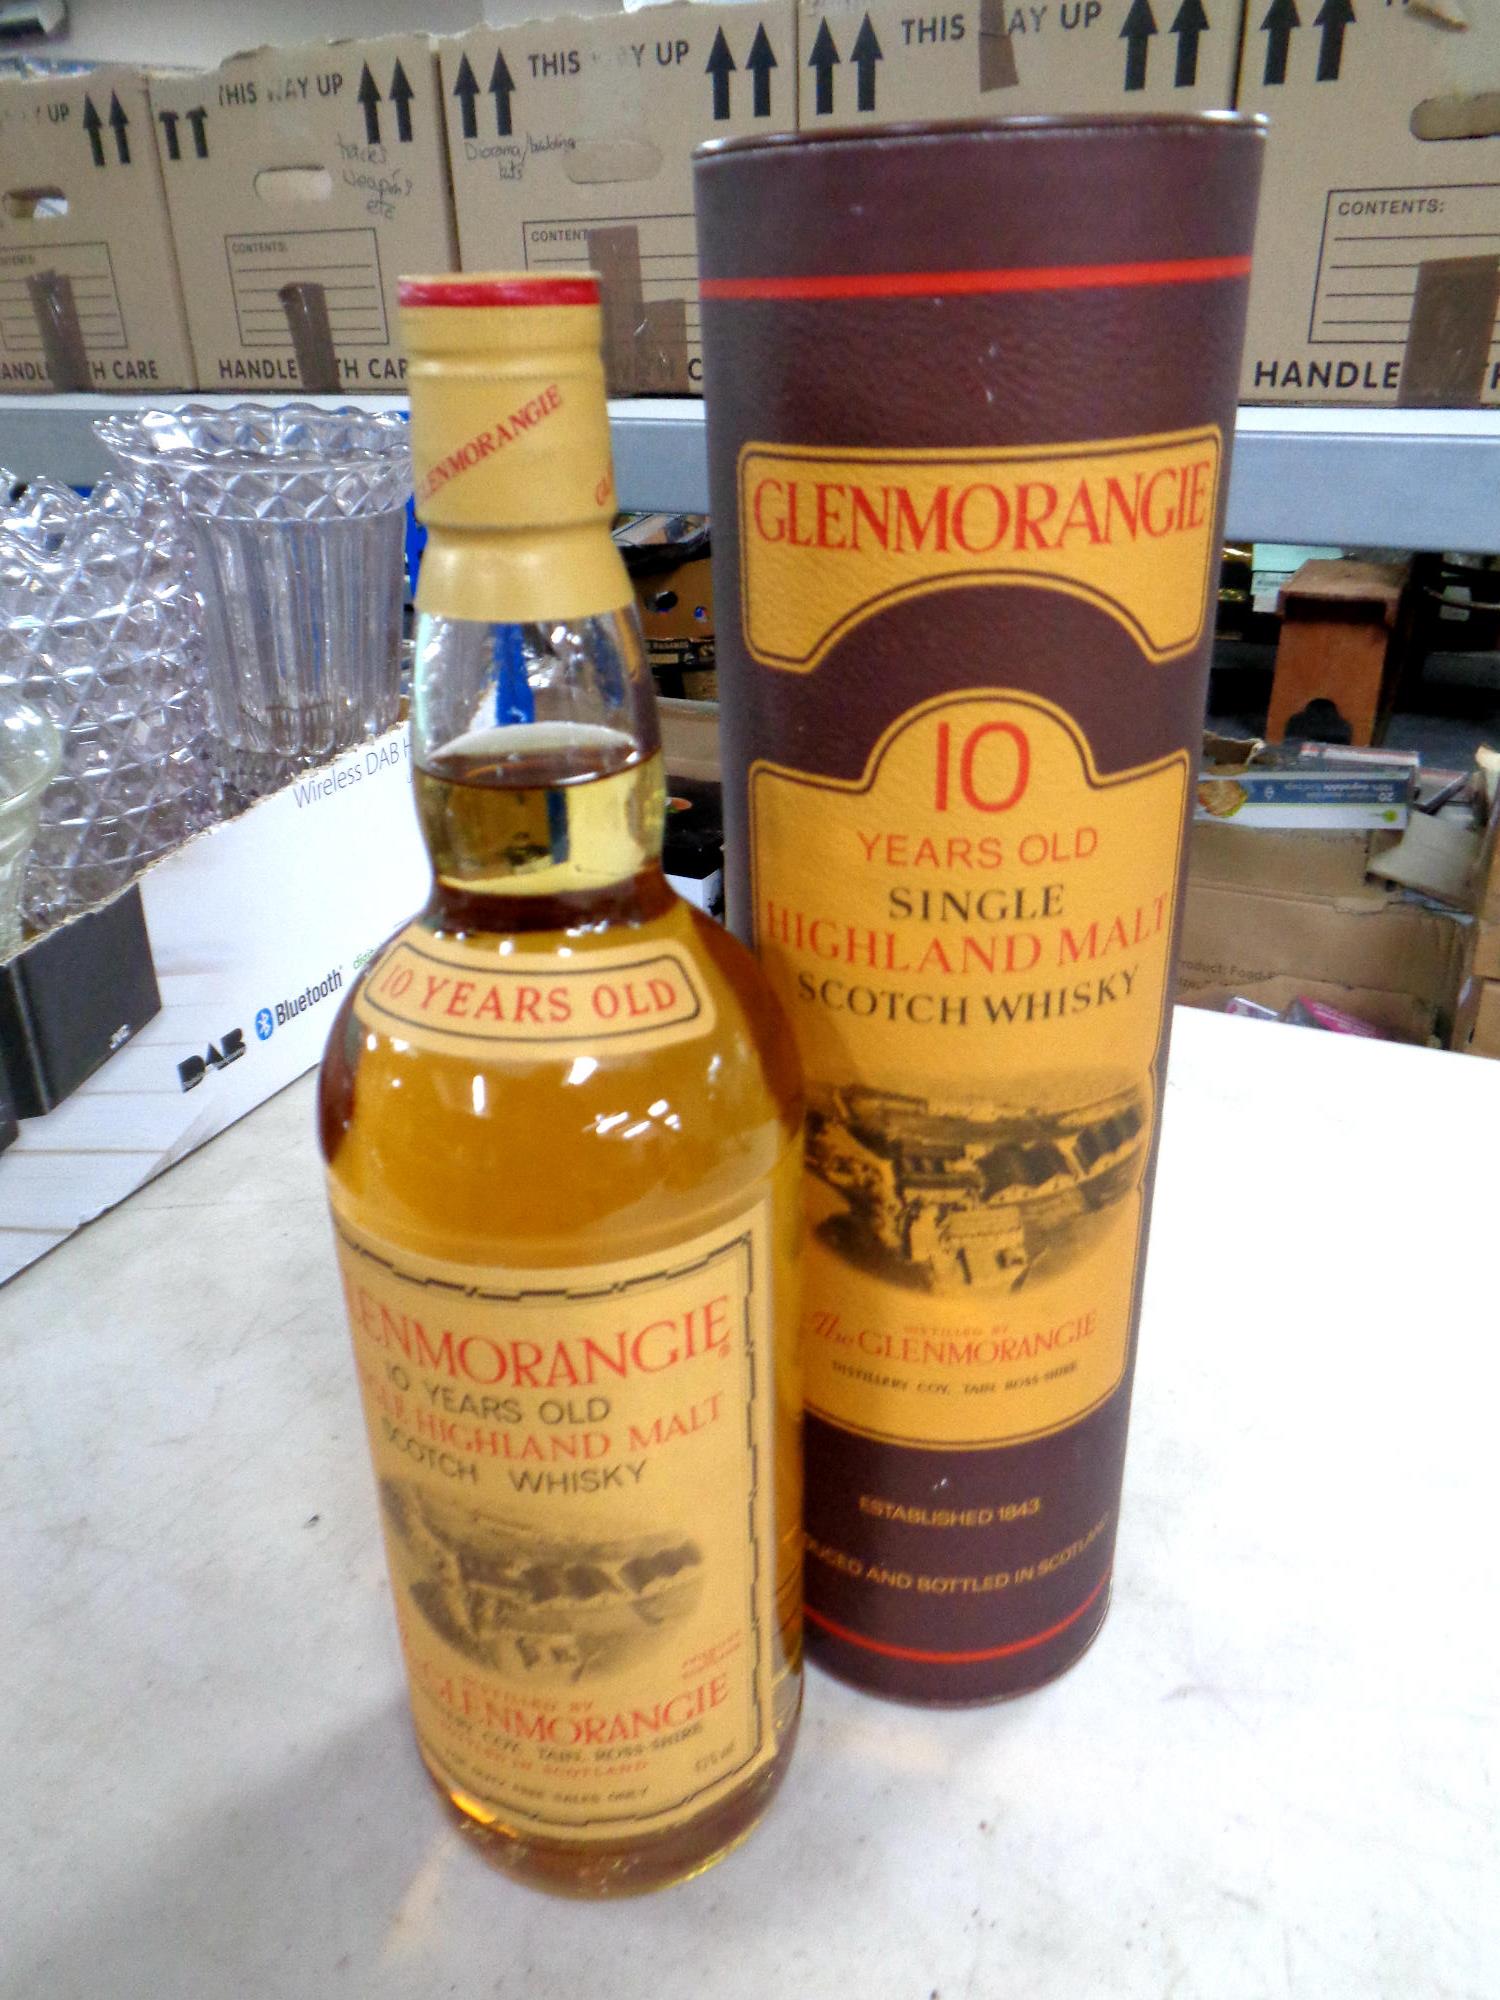 A bottle of Glemorangie 10 years old single malt Highland Scotch whisky 1 litre